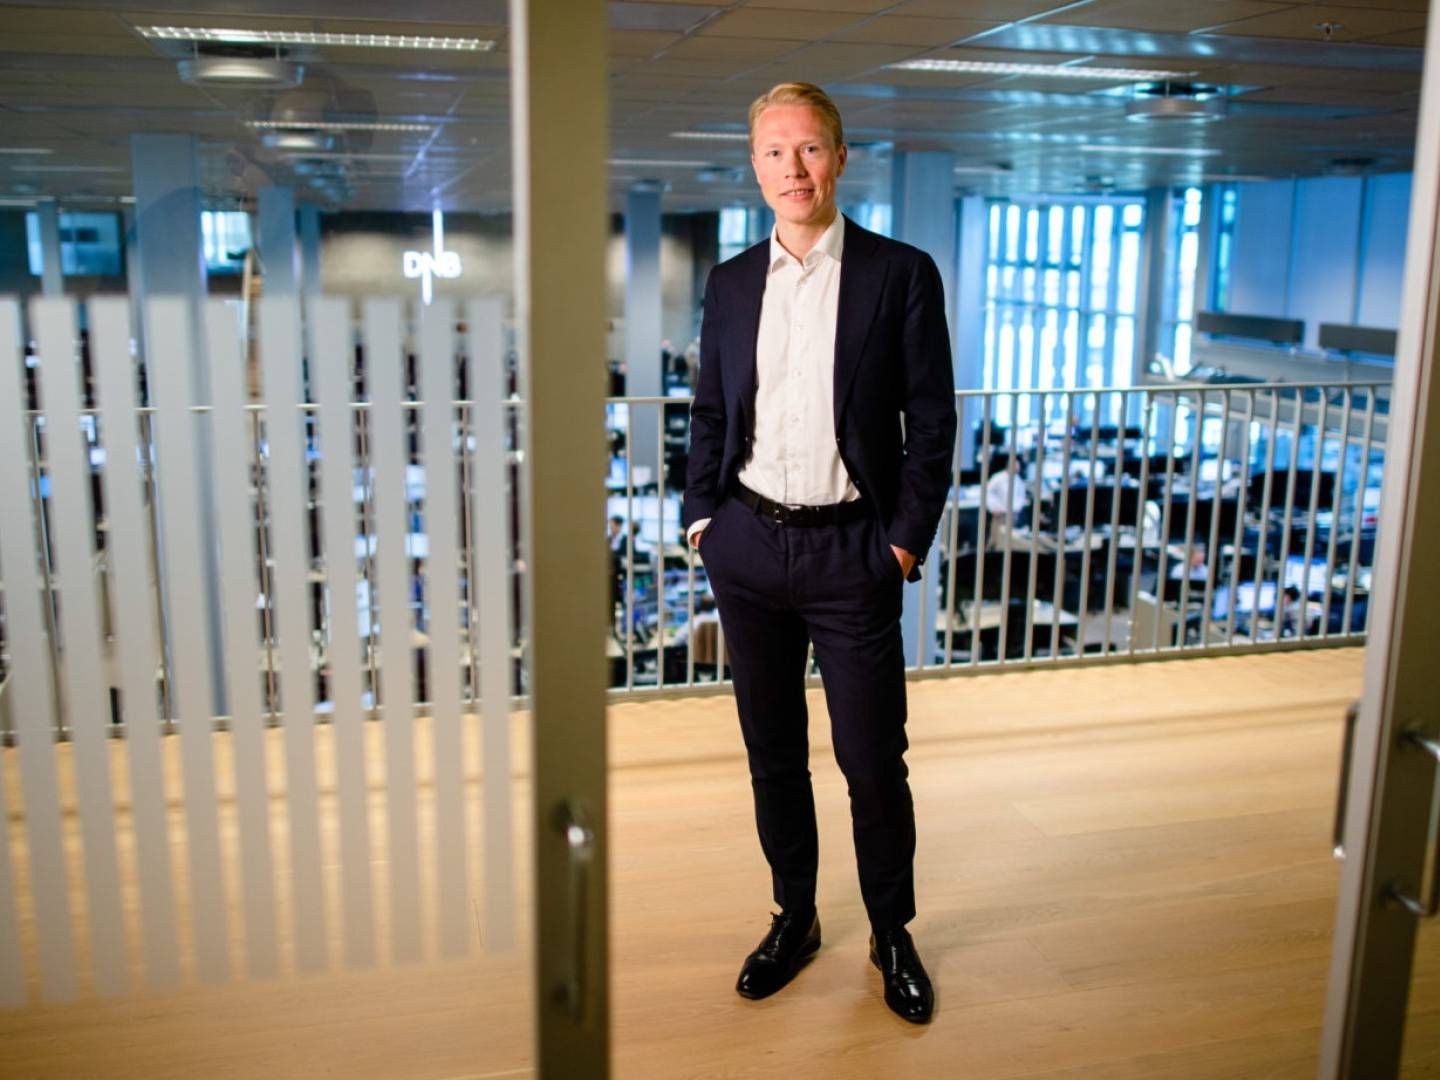 FORDEL NORGE: Bankanalytiker Håkon Astrup i DNB tror bank-kollapsen i USA kan snus til en fordel for solide, norske banker. | Foto: Stig B. Fiksdal/DNB